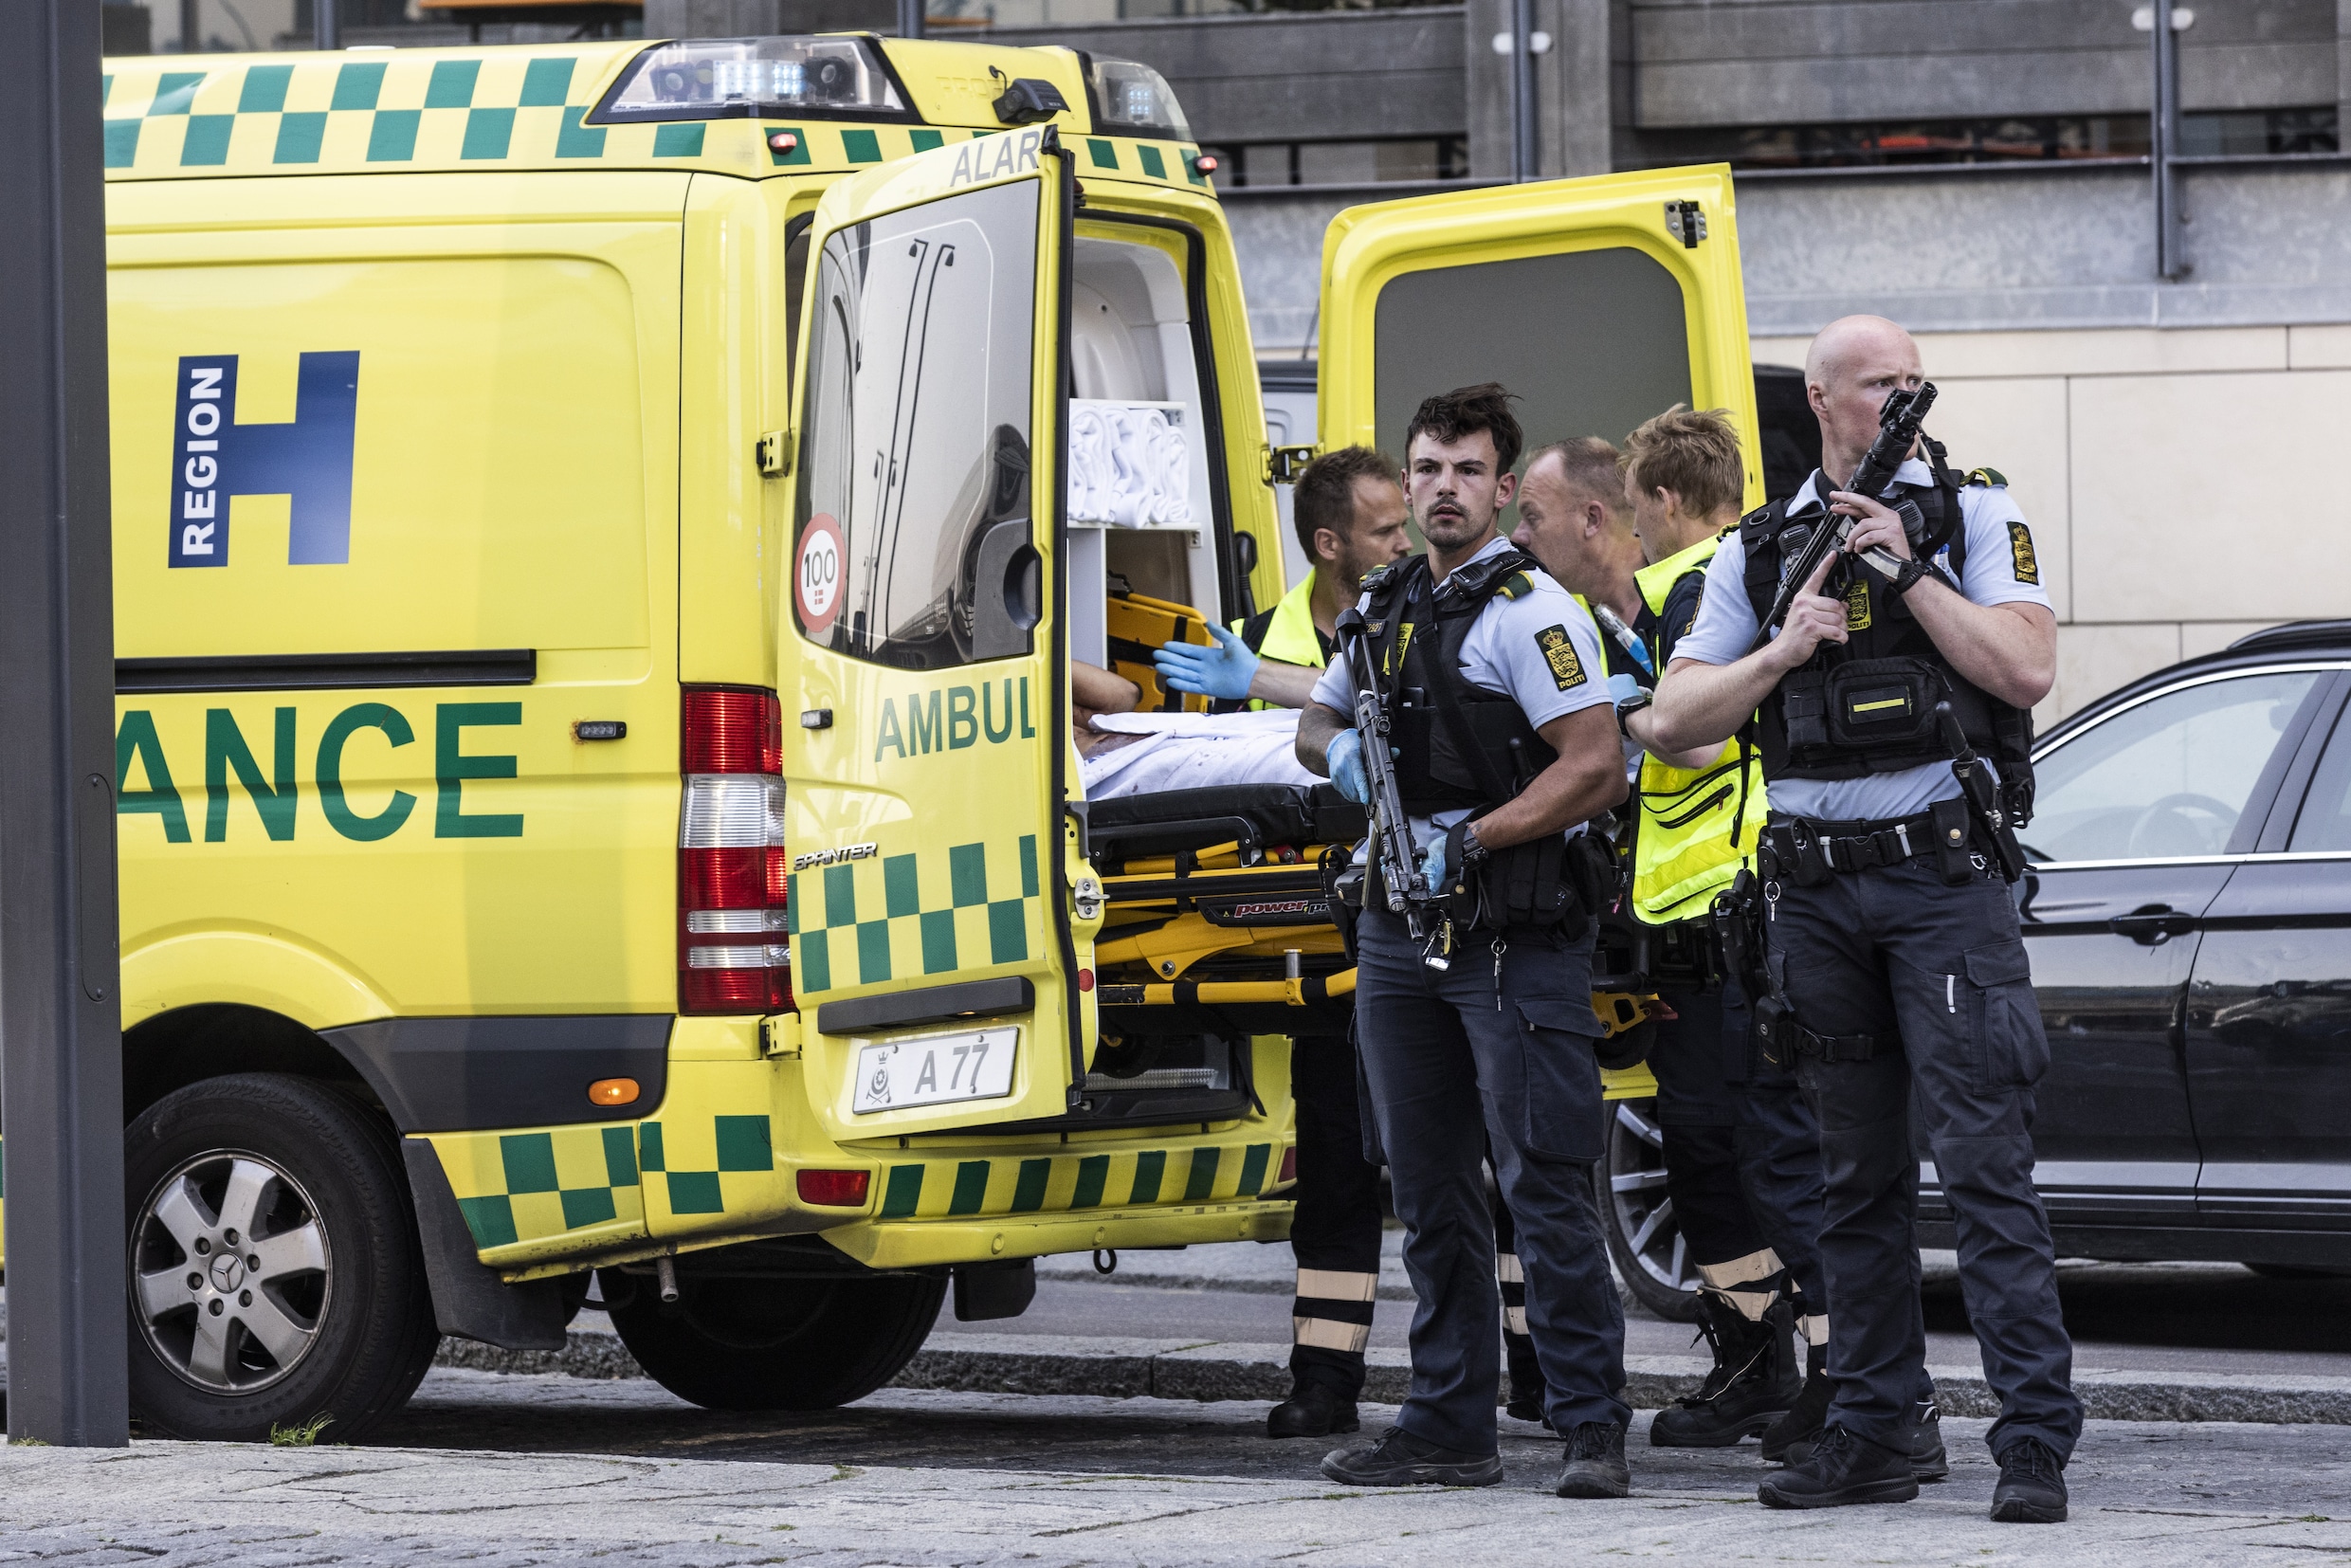 Man die drie mensen doodschoot in winkelcentrum Kopenhagen had psychiatrische problemen: dit weten we nu over de schietpartij